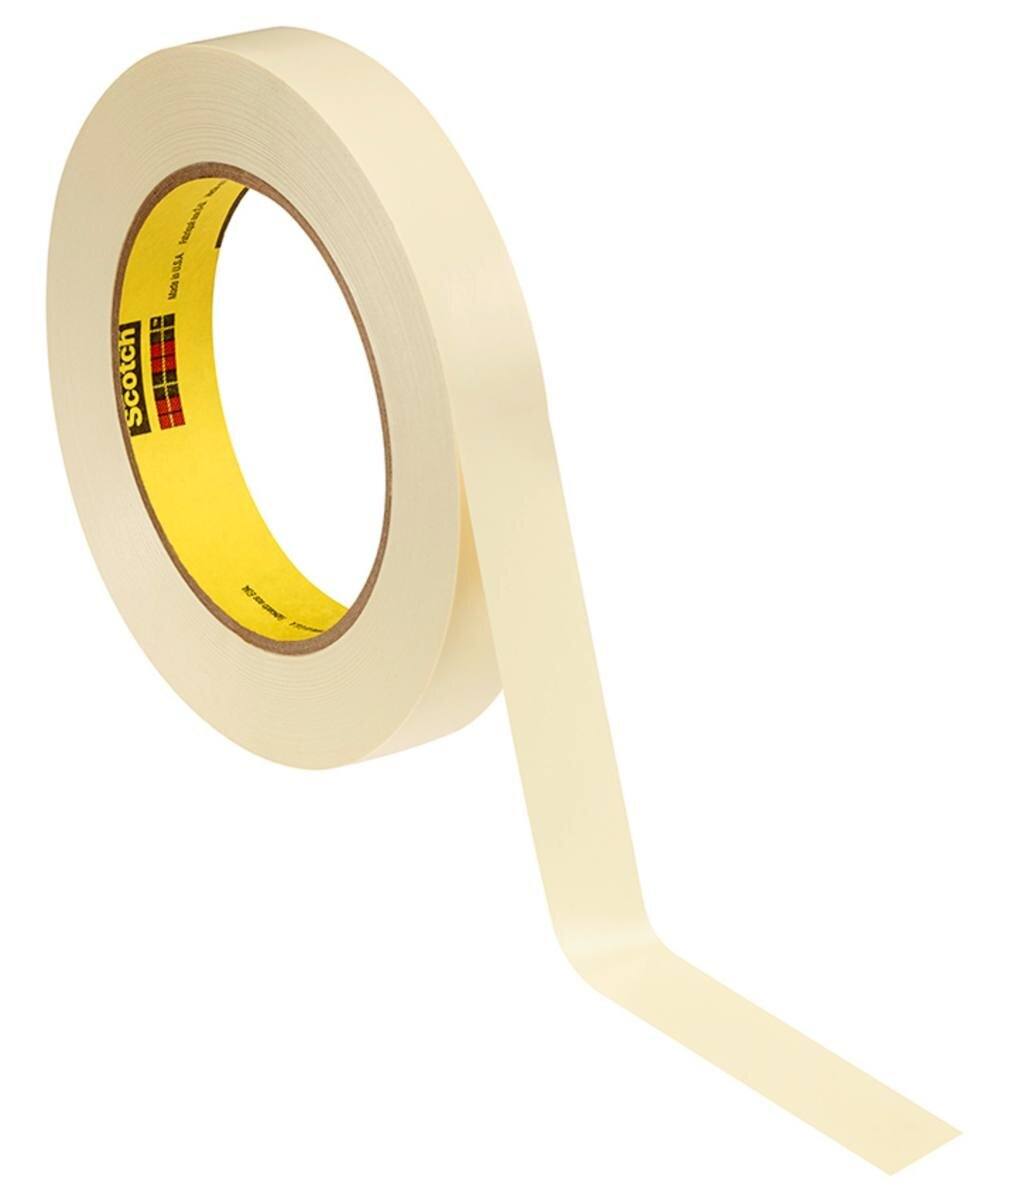  3M Galvanointiteippi pehmeä PVC 470, keltainen, 38 mm x 33 m, 0,18 mm